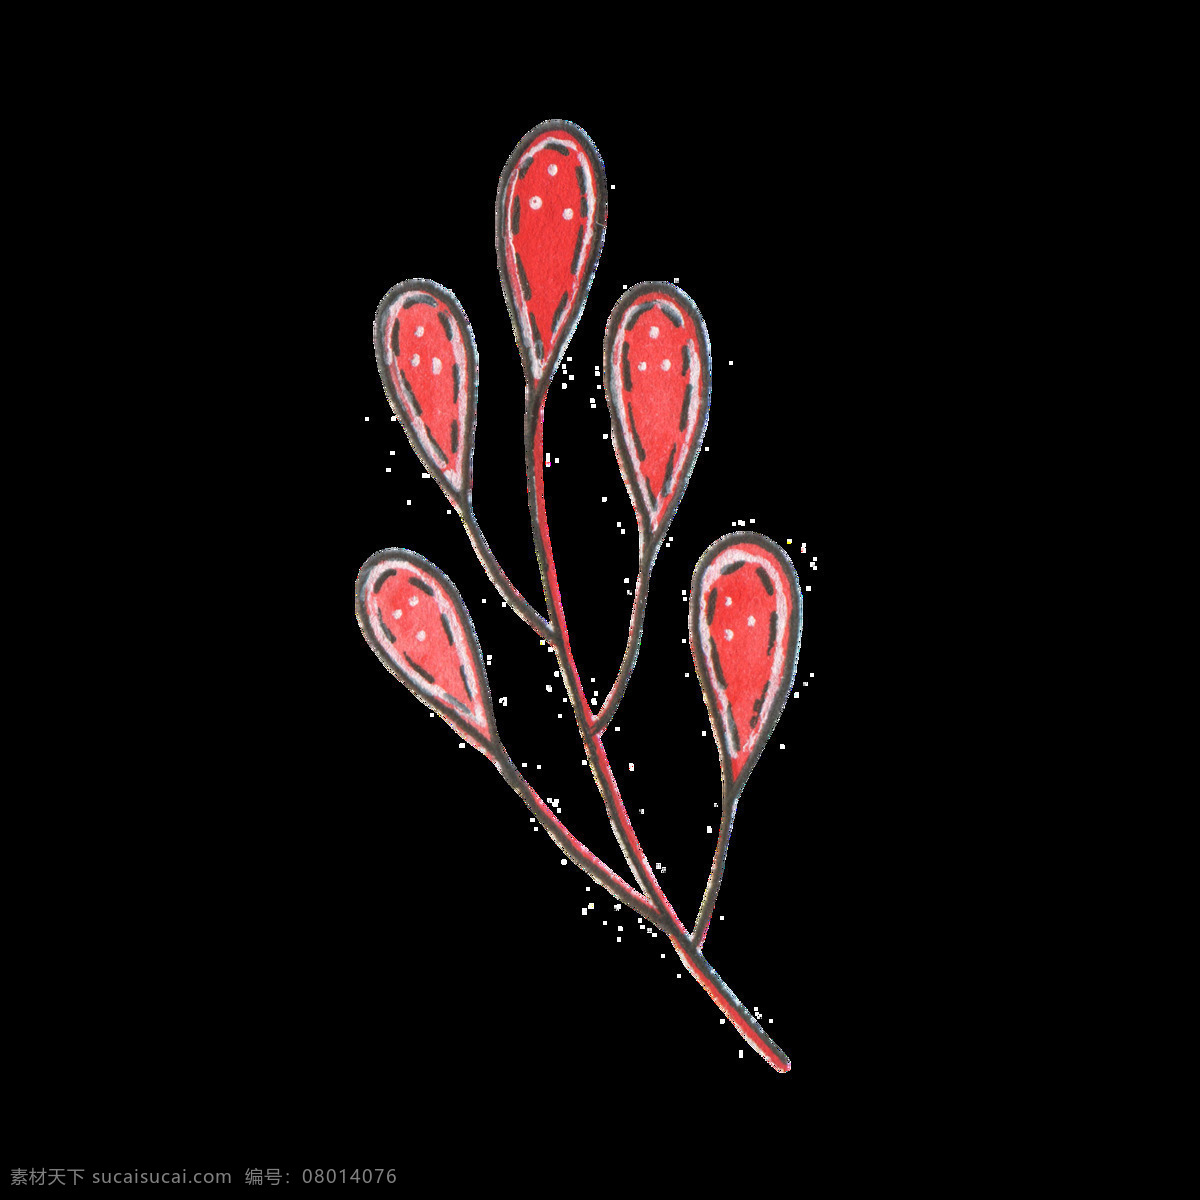 红色 椭圆形 植物 透明 卡通 抠图专用 装饰 设计素材